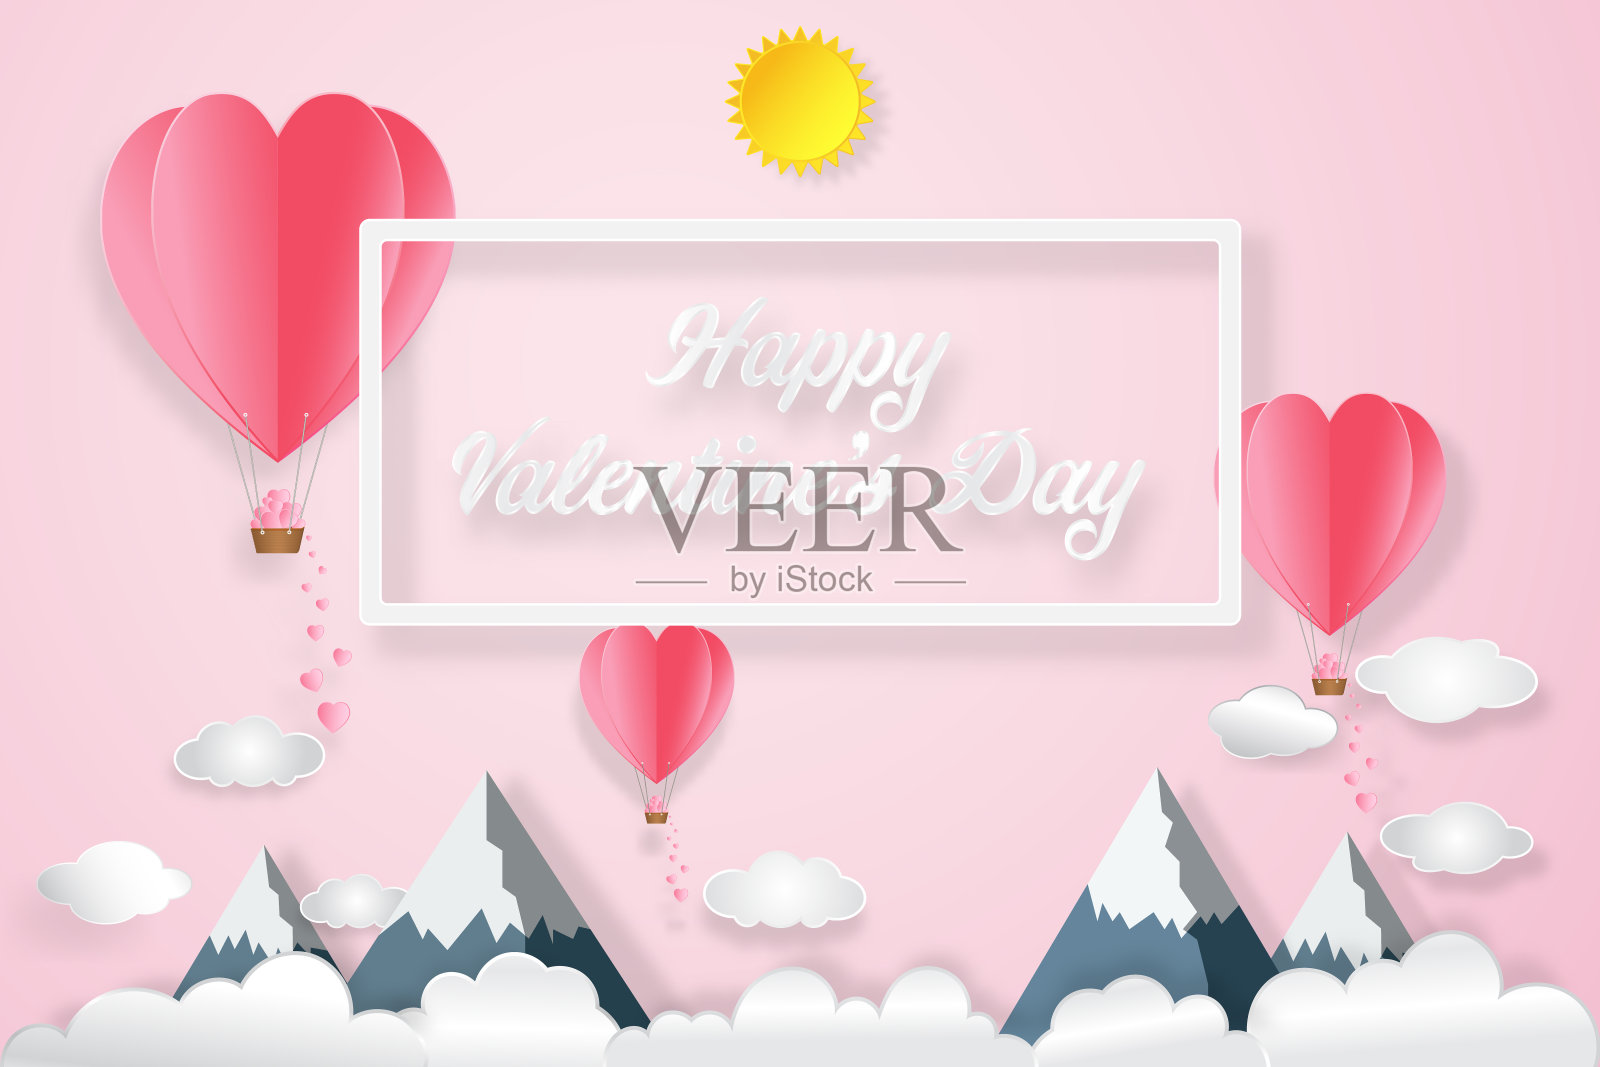 热气球和心形，阳光下的粉红色天空为爱的背景，情人节在2月14日，婚礼和纸艺术概念。矢量插图。设计模板素材